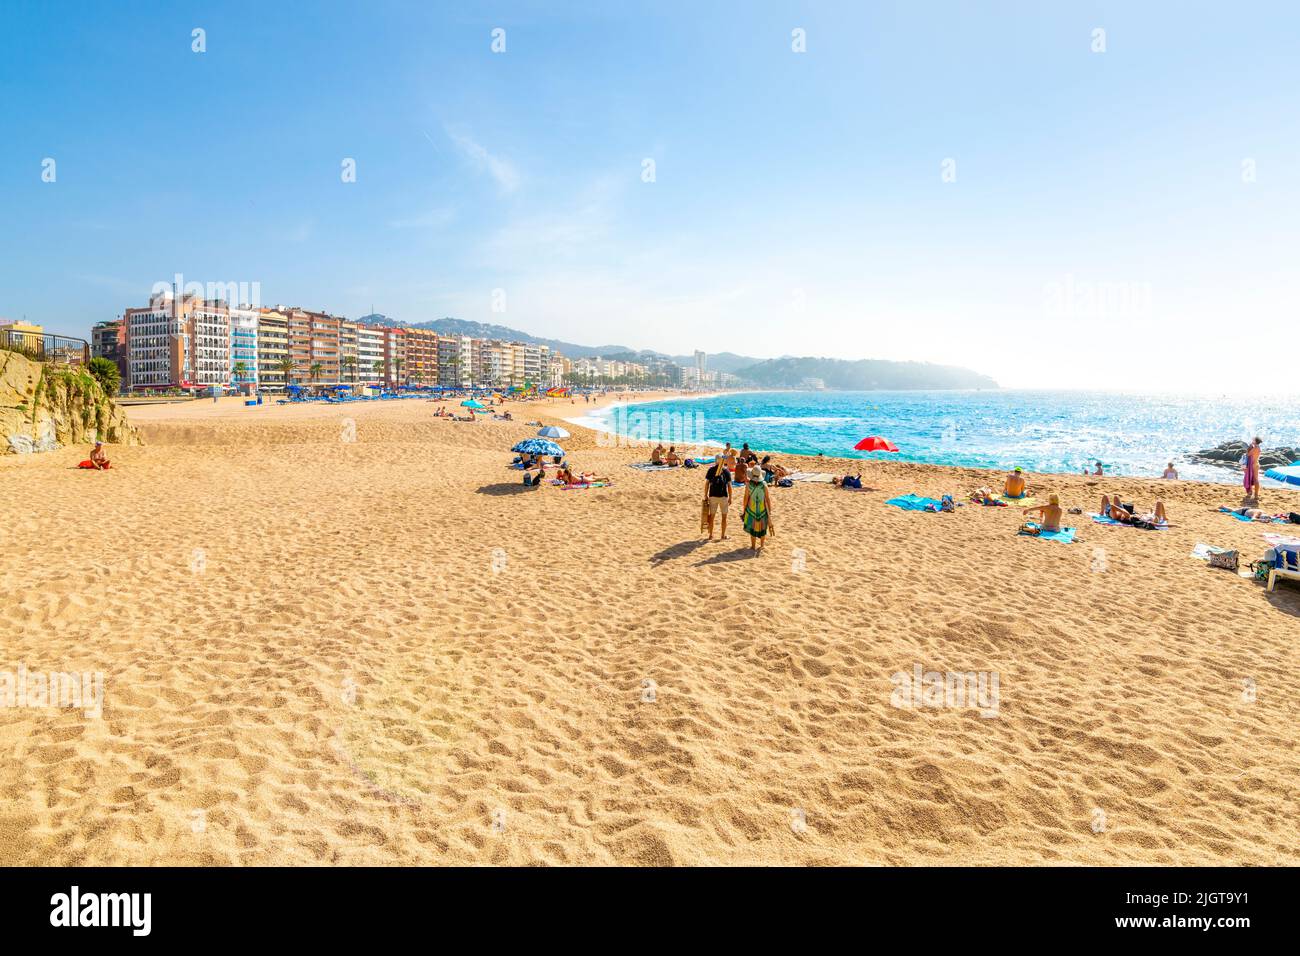 La plage de sable le long de la côte de la mer Méditerranée de la Costa Brava à la station balnéaire de Lloret de Mar, Espagne. Banque D'Images